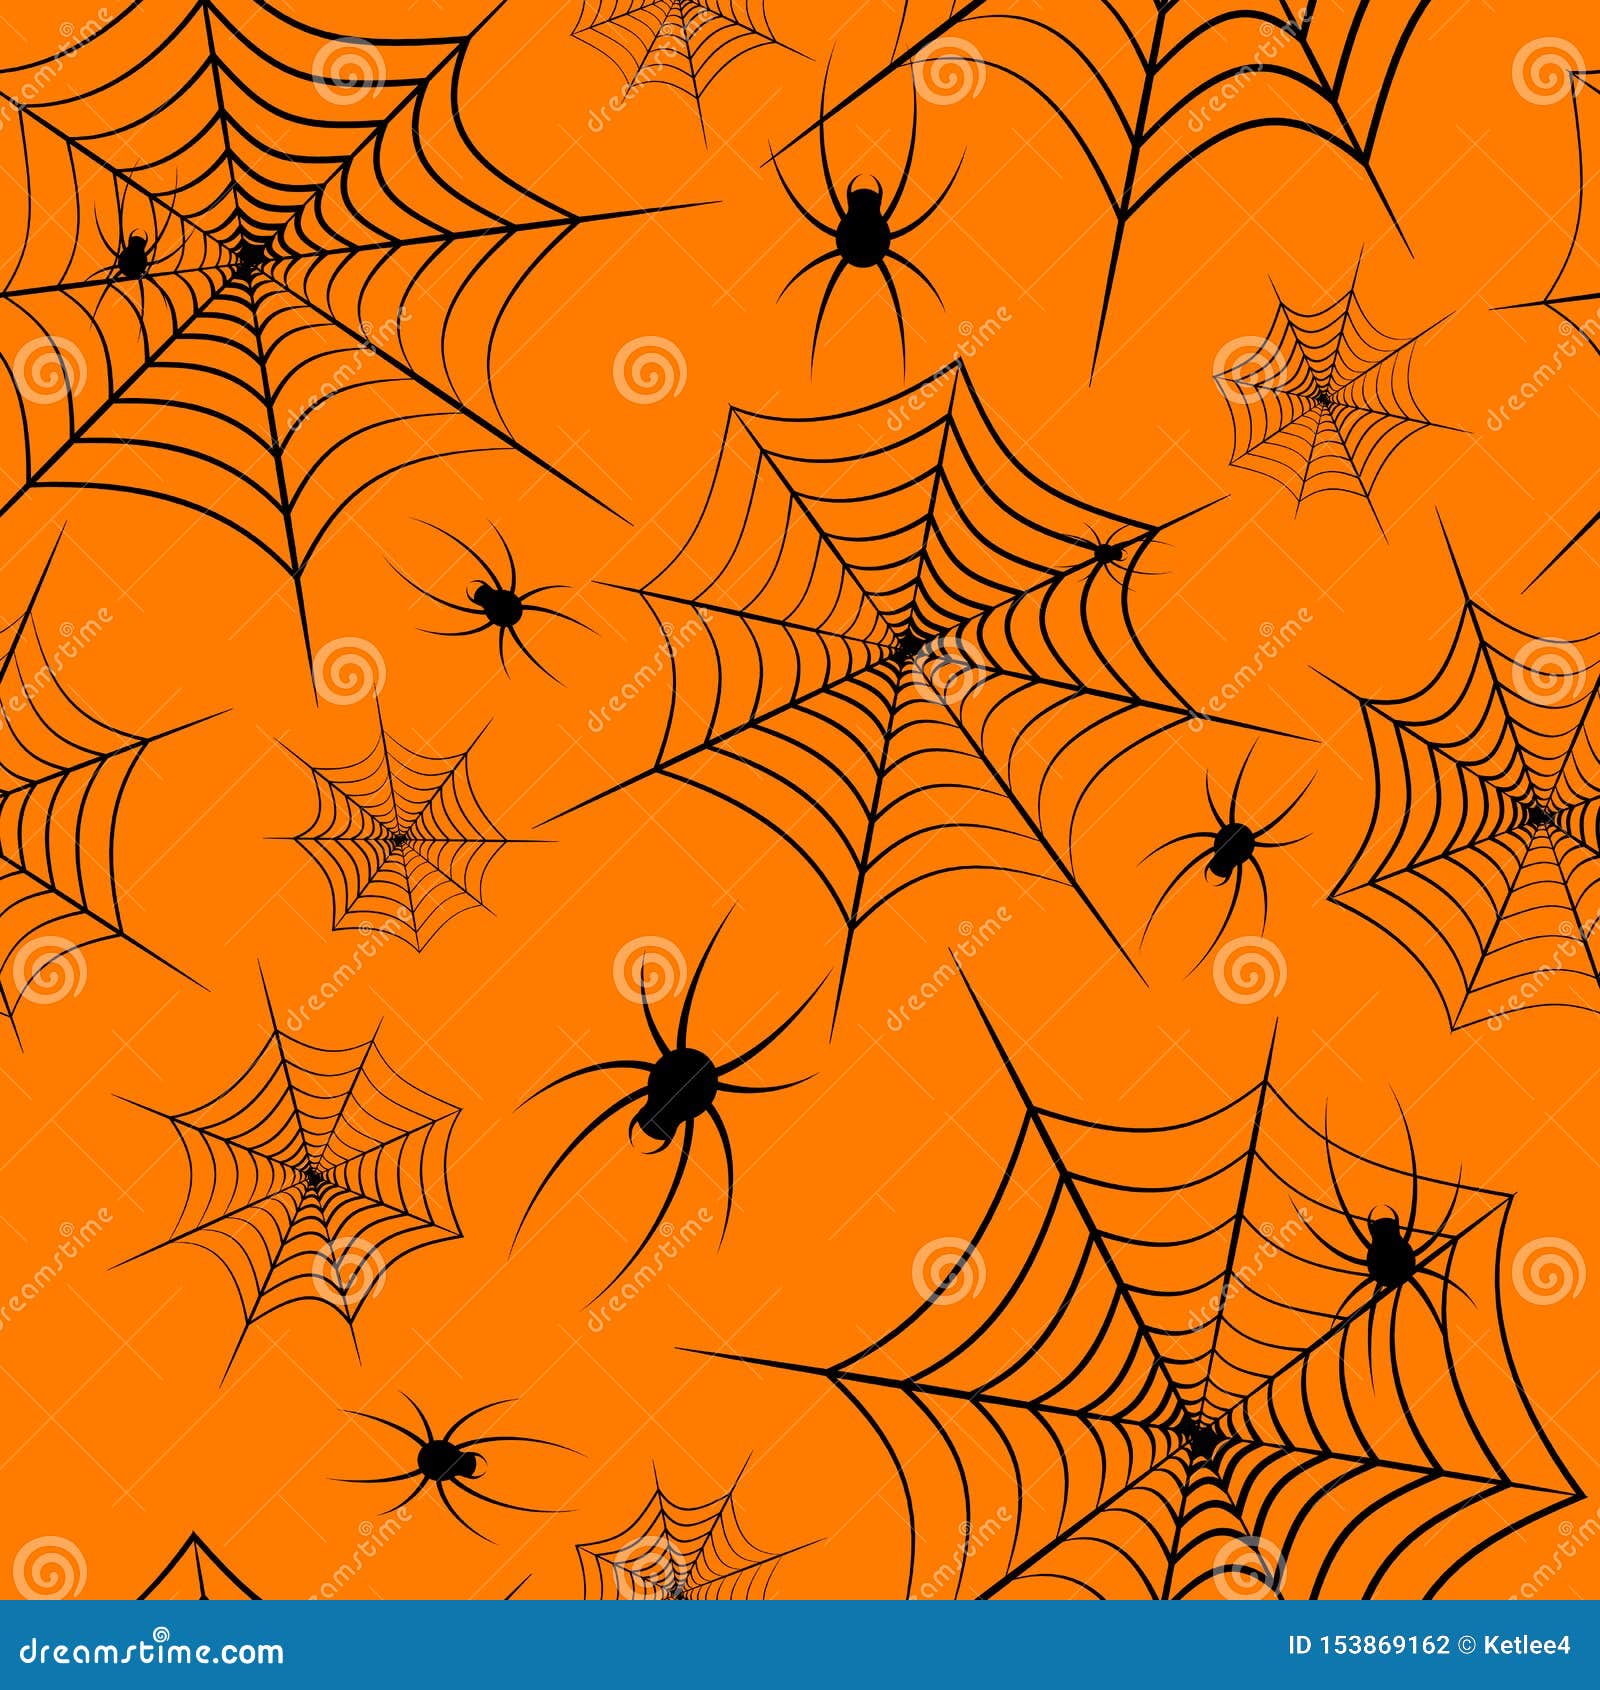 Halloween Theme Seamless Pattern Cobweb and Spiders on Orange: Halloween Đón Halloween cùng với chủ đề Seamless Pattern Cobweb and Spiders trên nền Cam. Hãy tạo nên không gian đáng sợ và hồi hộp bất tận với hình nền đầy sinh động và rùng rợn này. Xem ngay để có được trải nghiệm thú vị.